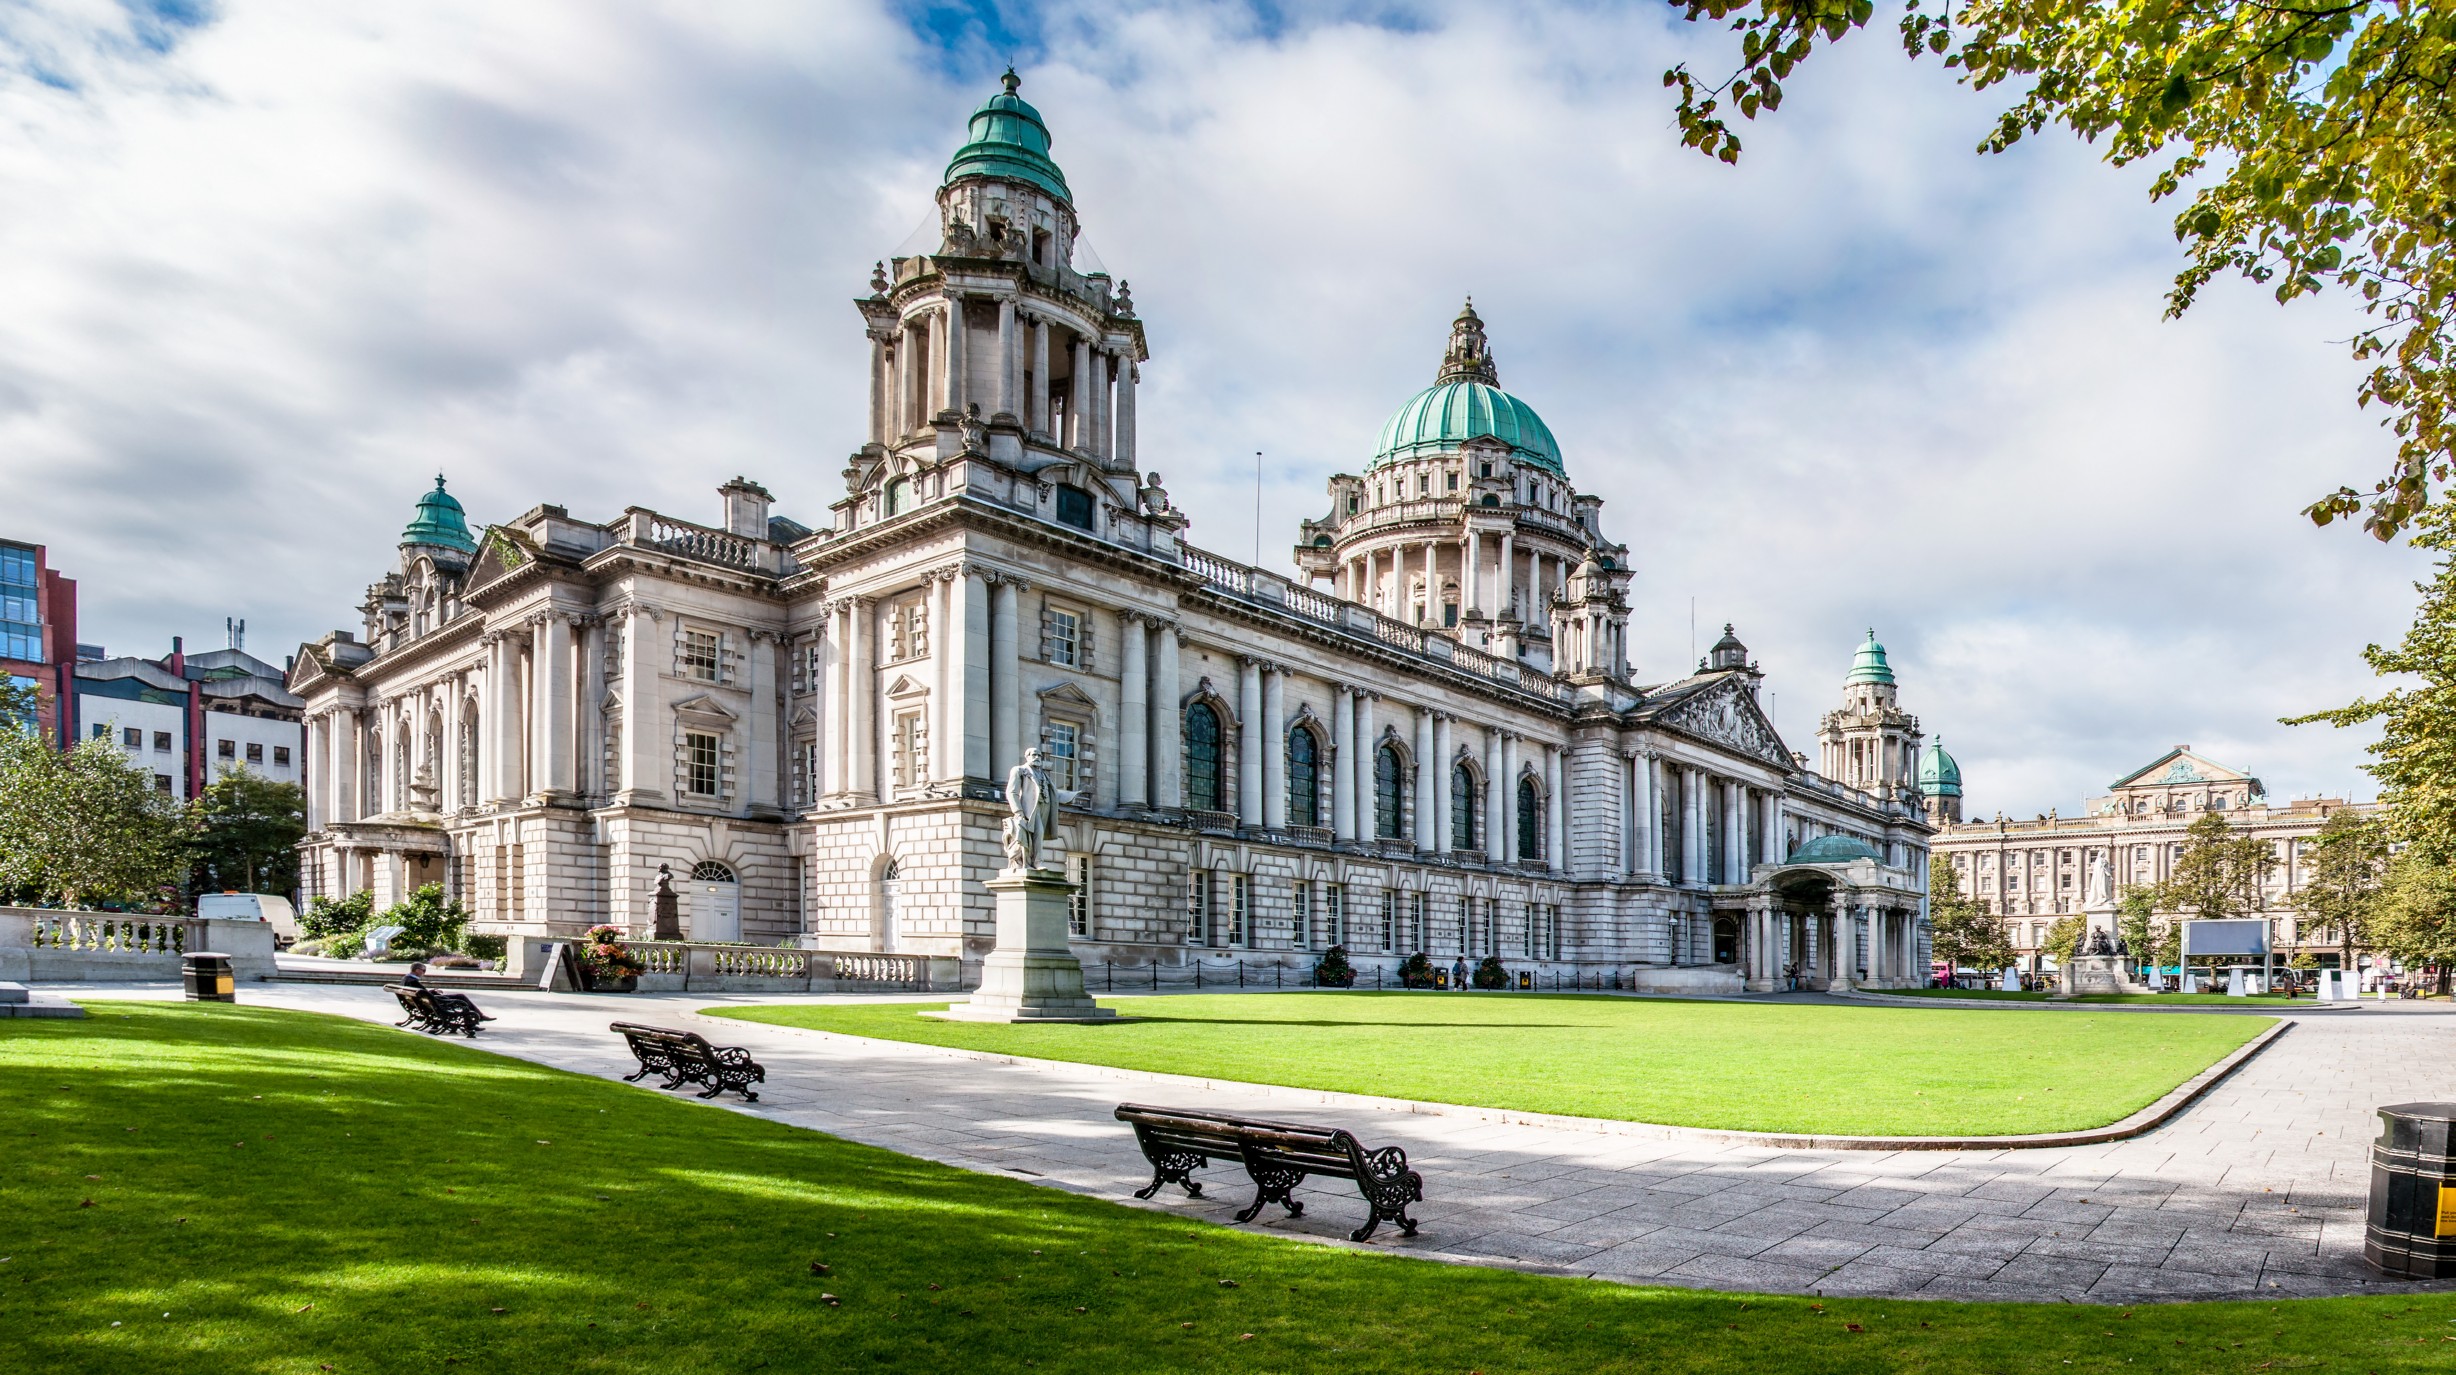 Ierland, Belfast - City Hall